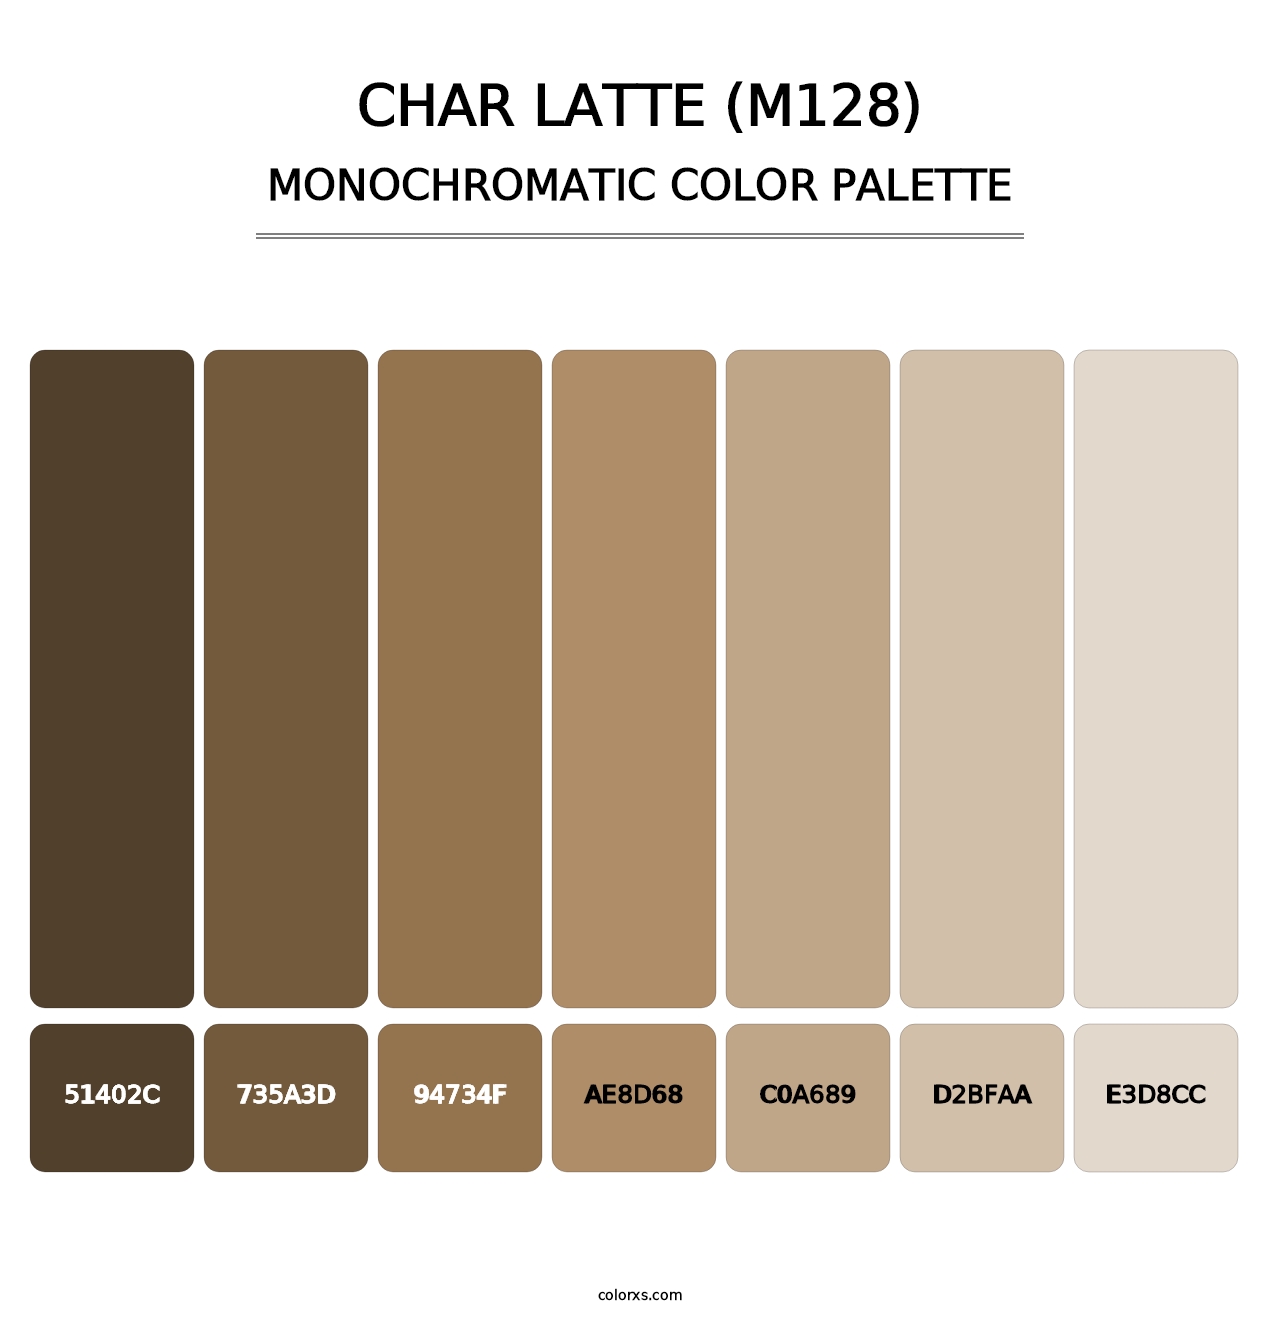 Char Latte (M128) - Monochromatic Color Palette